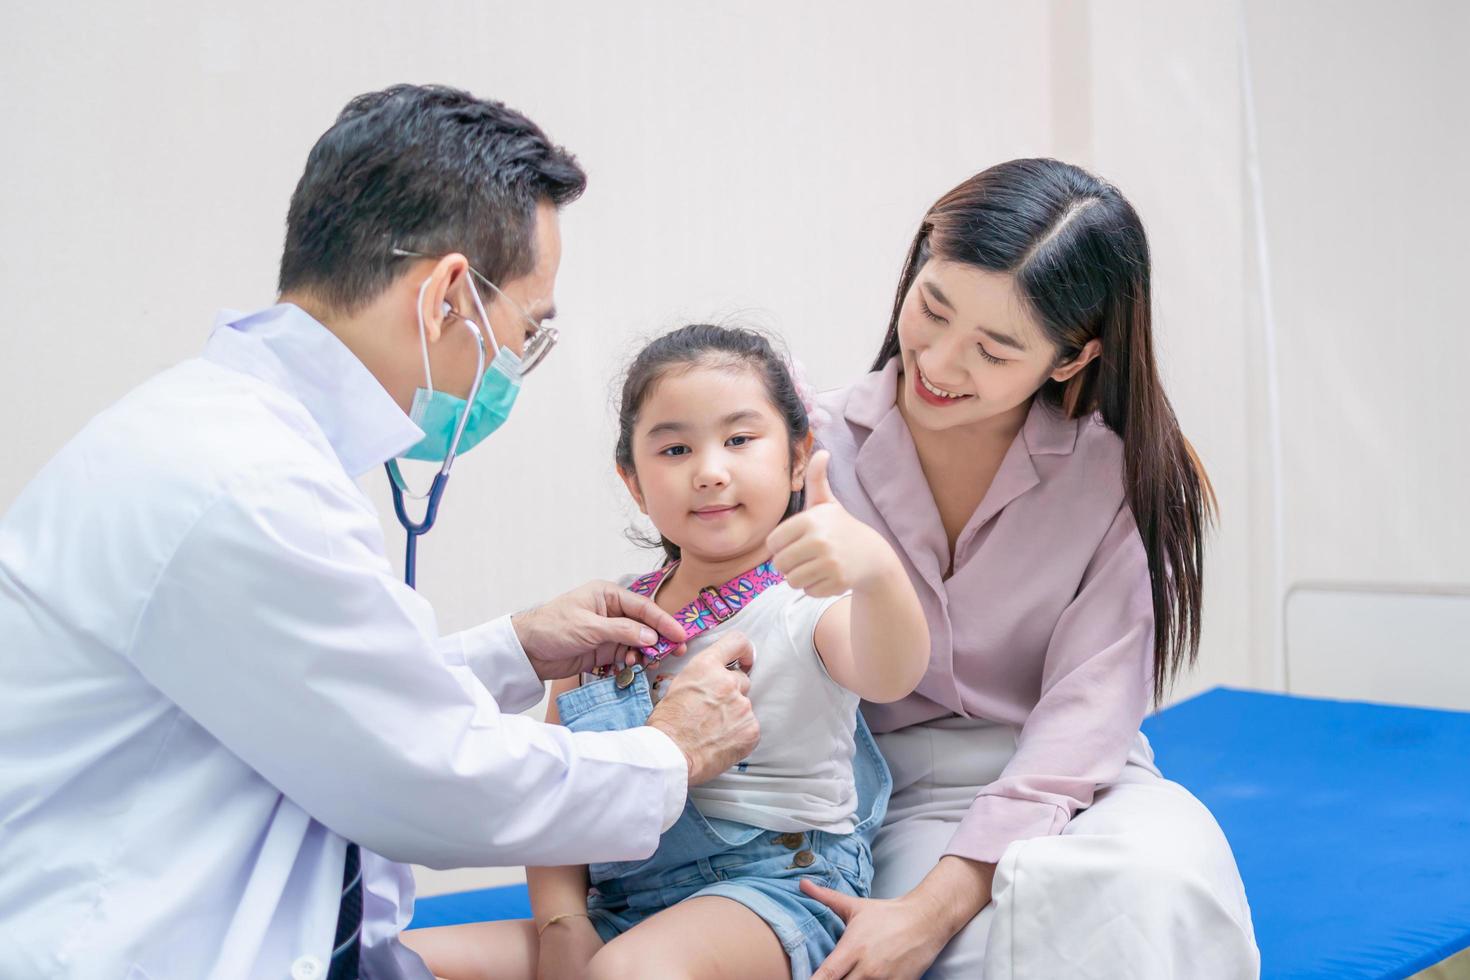 kind meisje patiënt bezoek arts met moeder, kinderarts arts onderzoekt kleine patiënt met behulp van een stethoscoop foto